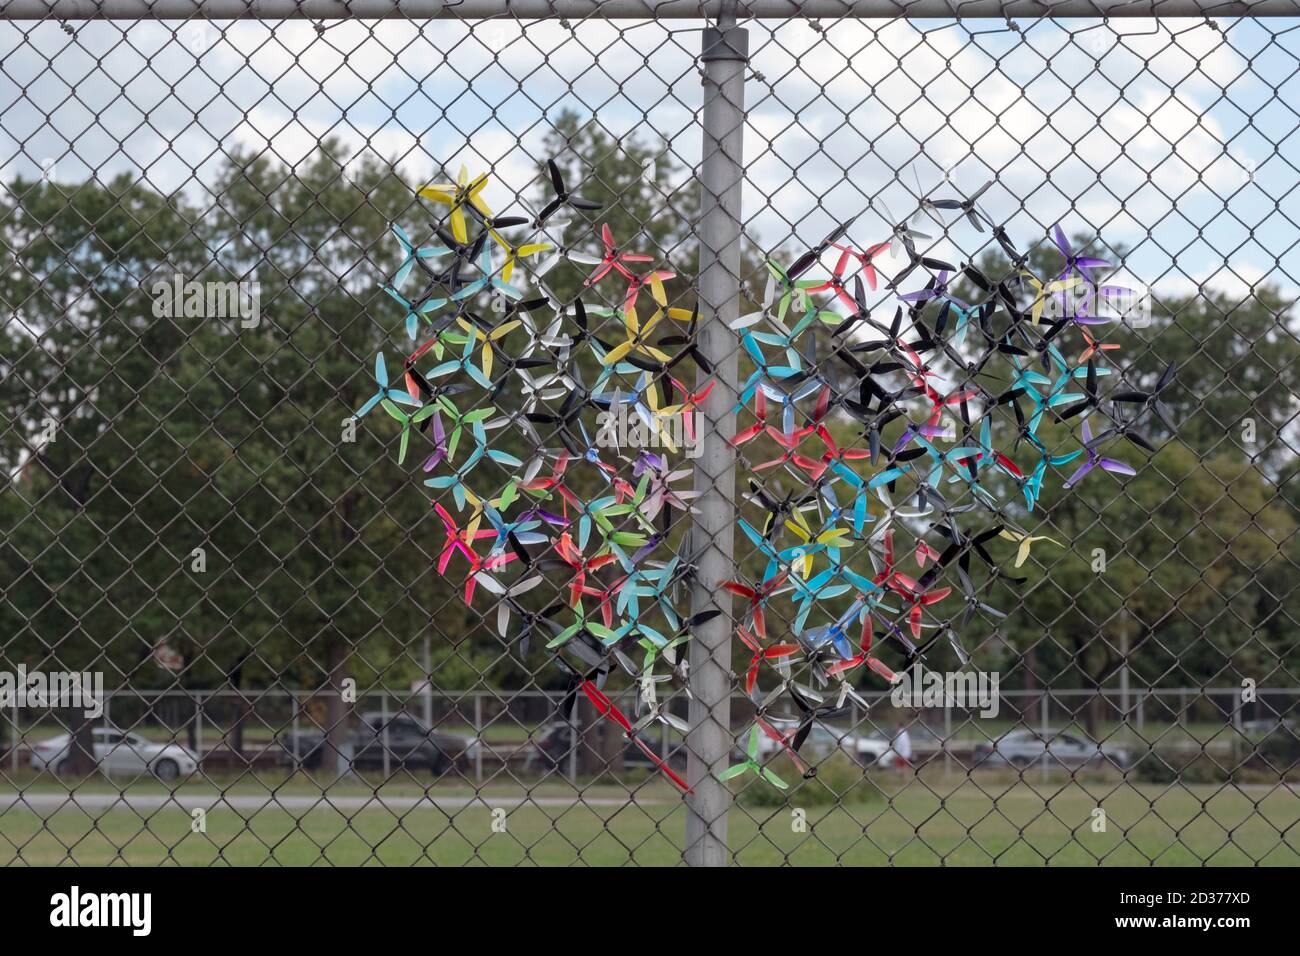 Un grand coeur de taille fait d'avions en plastique et coincé dans une clôture de chaînette. À Flushing Meadows Corona Park, Queens, New York. Banque D'Images